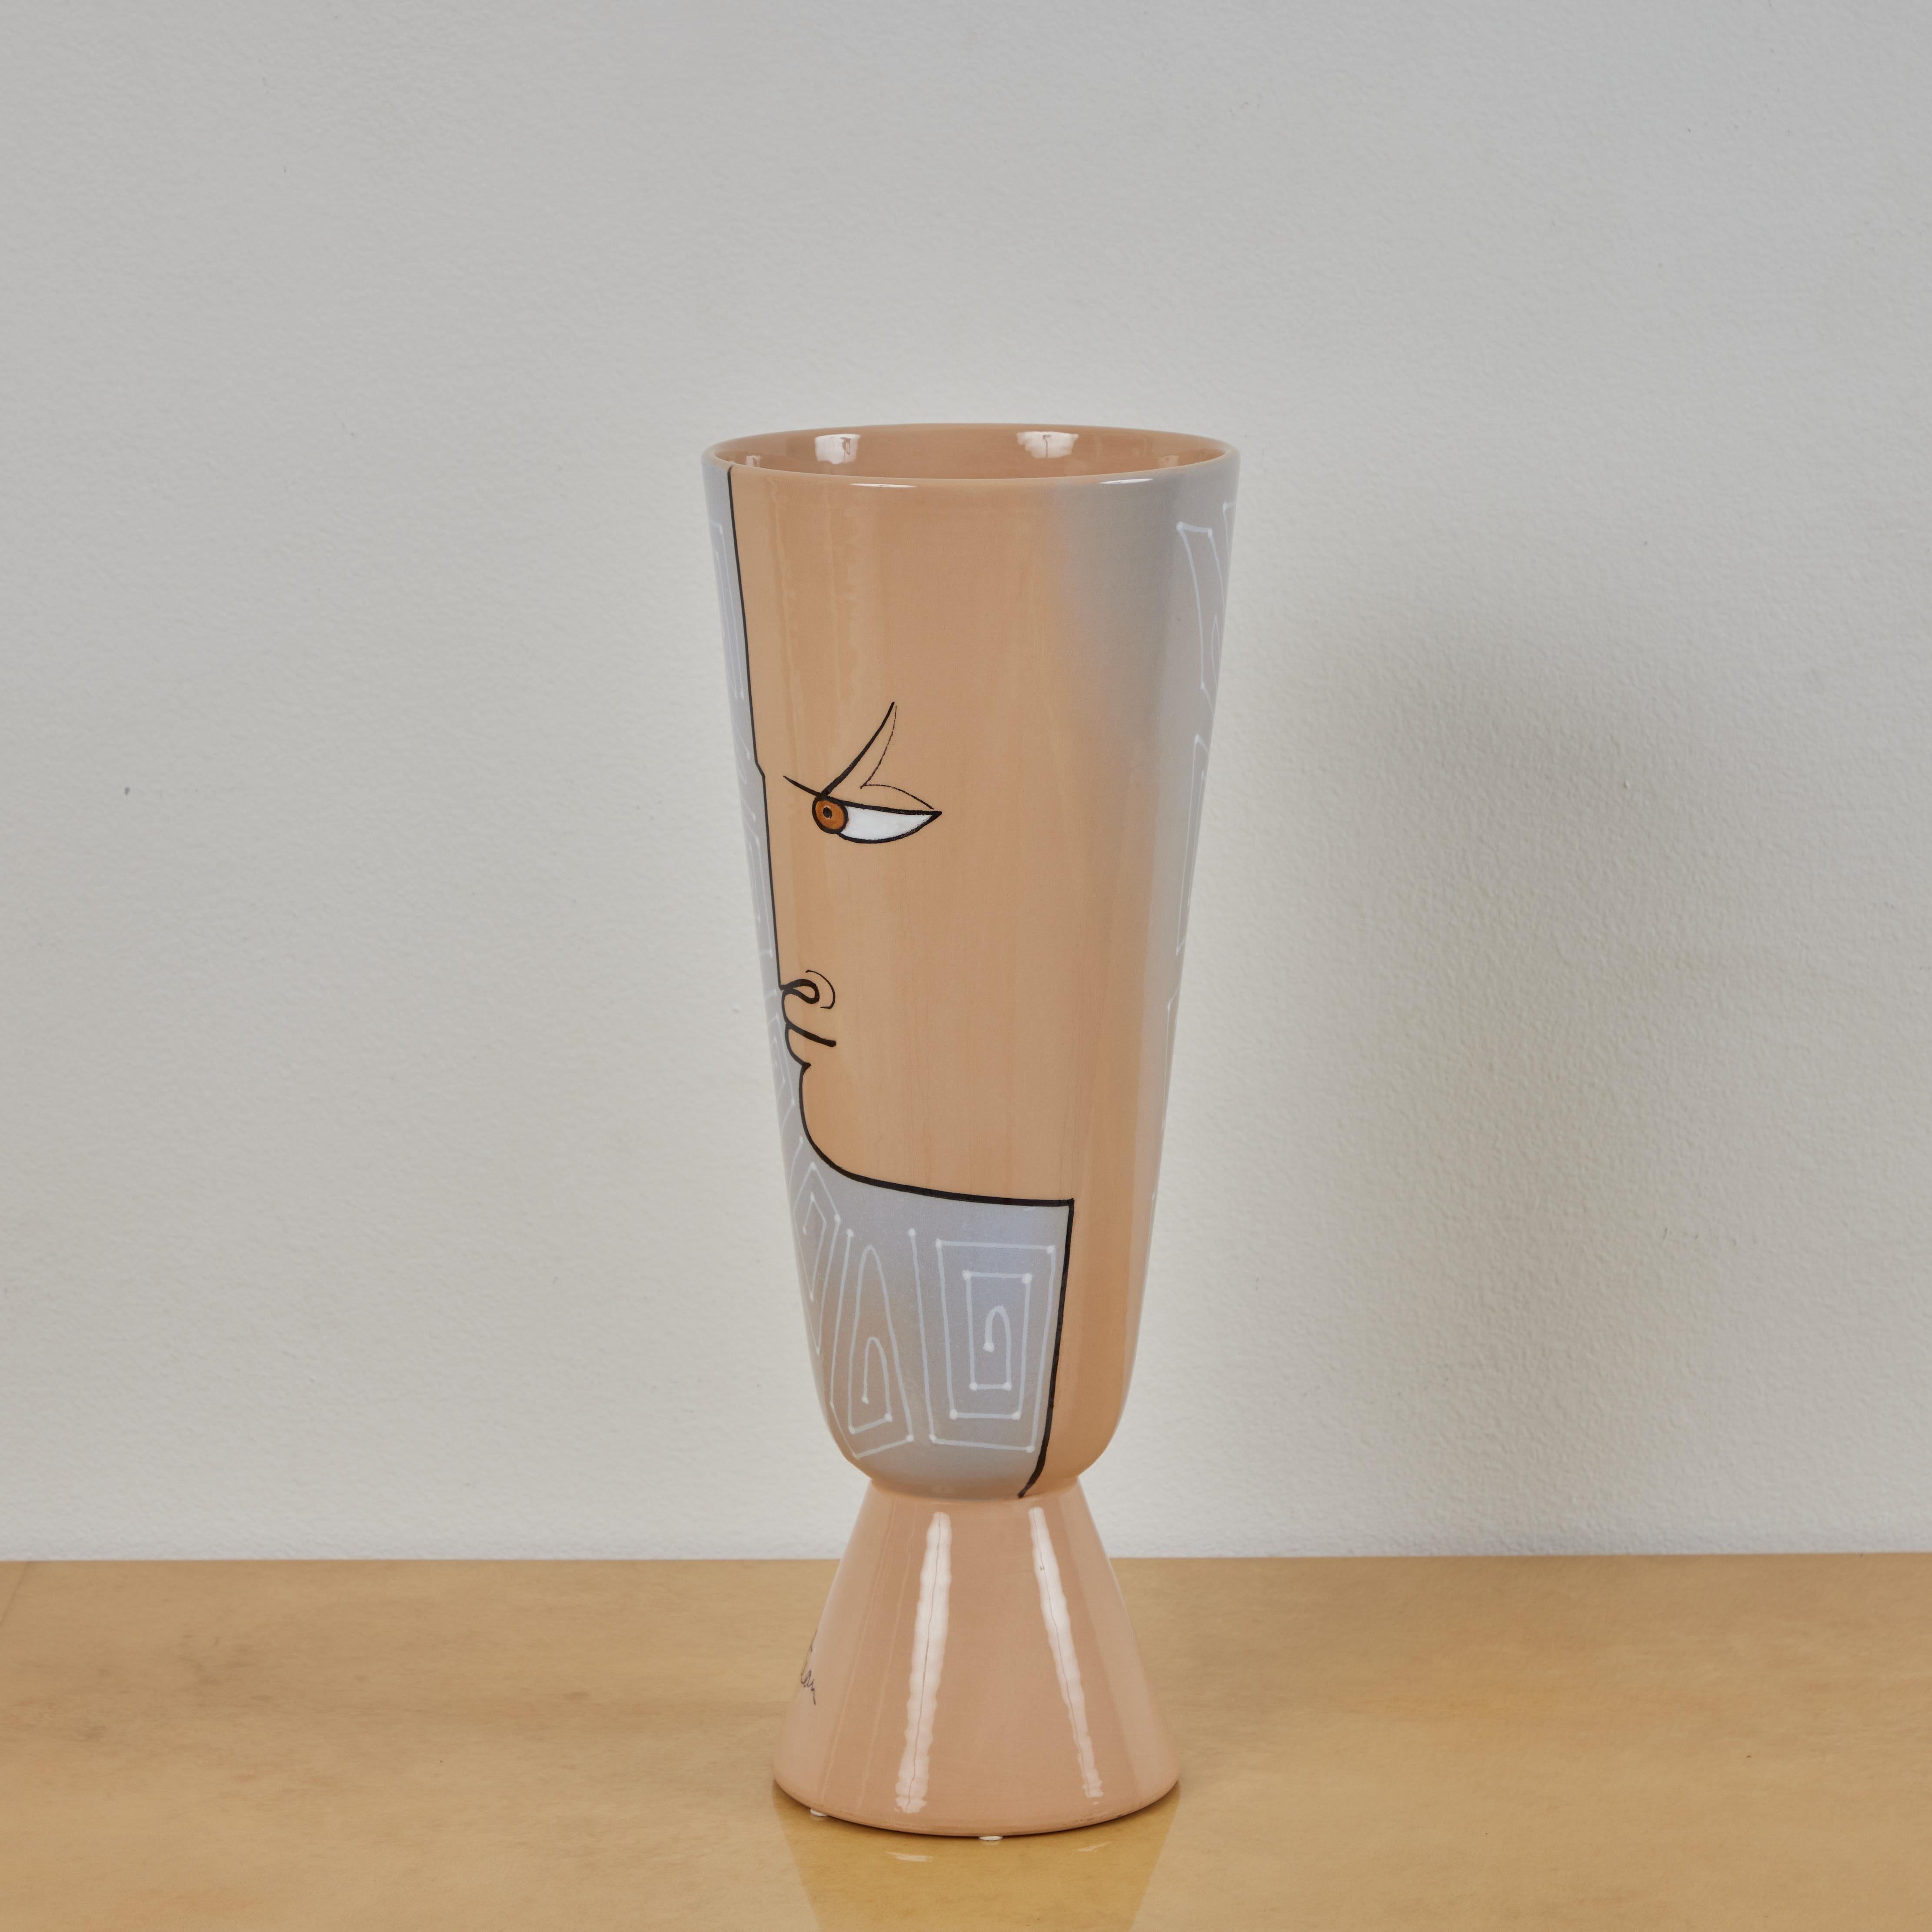 Il s'agit d'un vase en faïence émaillée produit par Roche Bobois dans les années 2010. Le vase reprend un design réalisé par Jean Cocteau au début des années 1960. Il présente 2 profils taupe avec des détails géométriques sur fond gris. Le taupe et